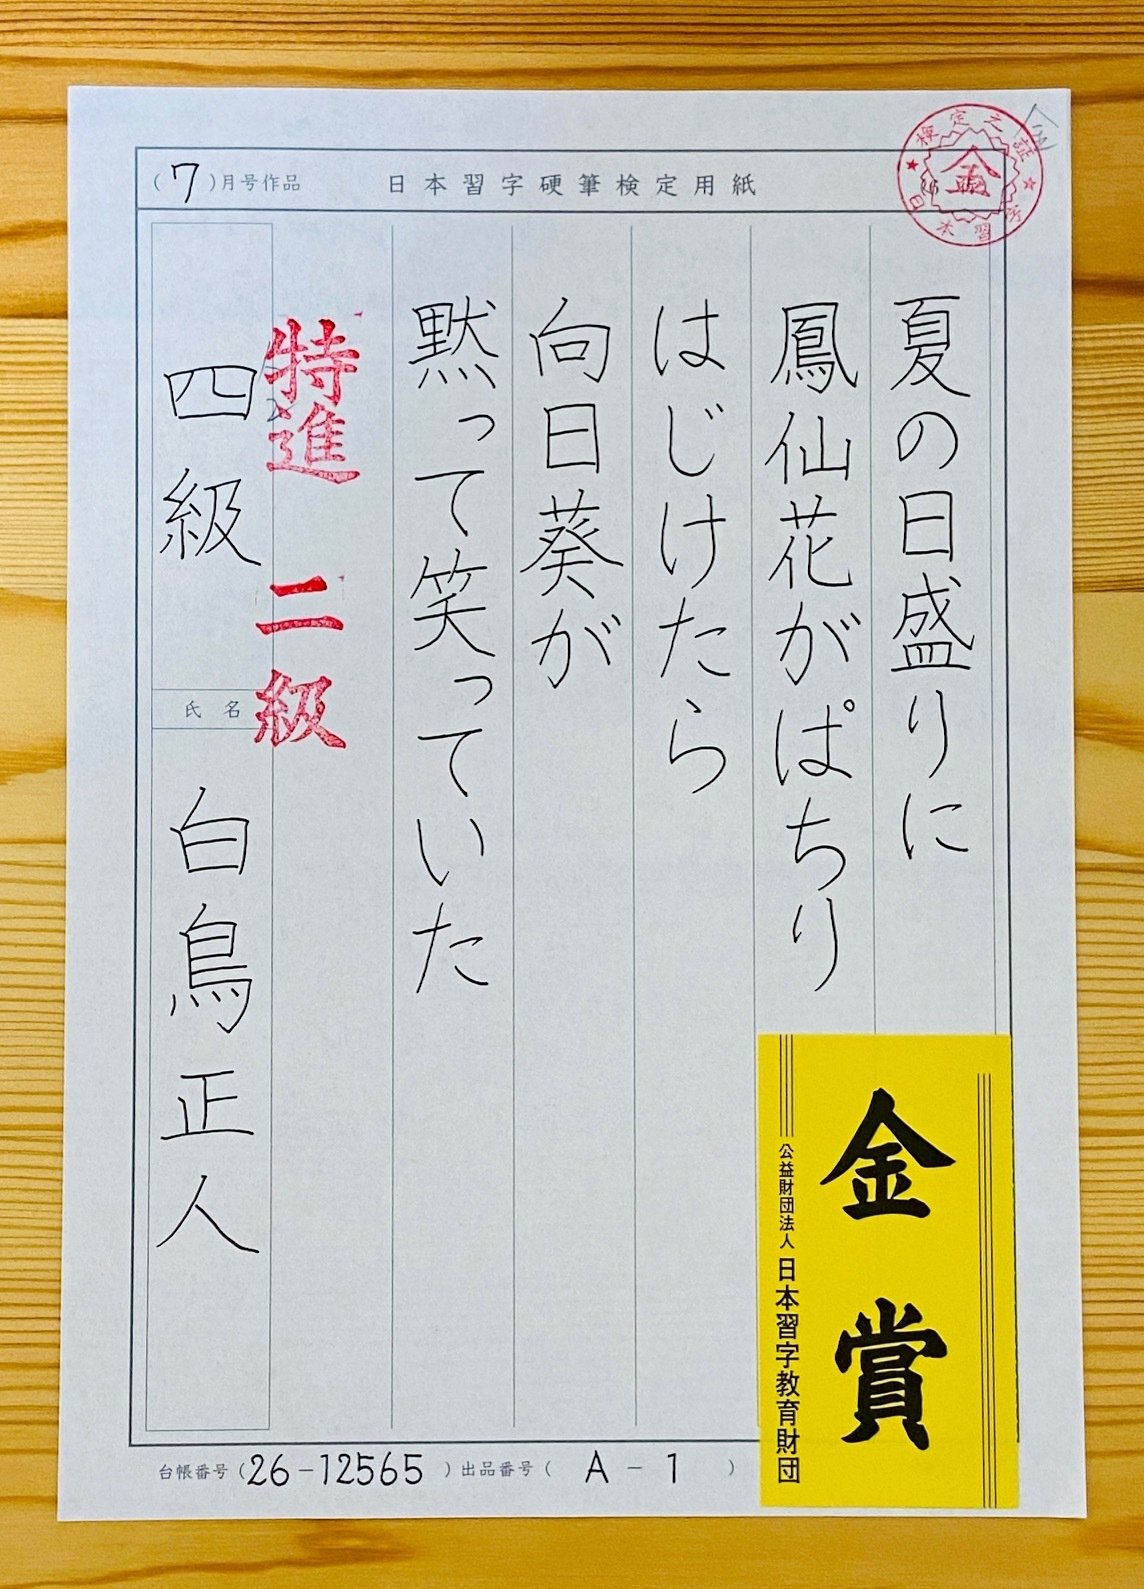 見たままを書く 日本習字 オンライン ペン字教室 書き心 白鳥正人 Note